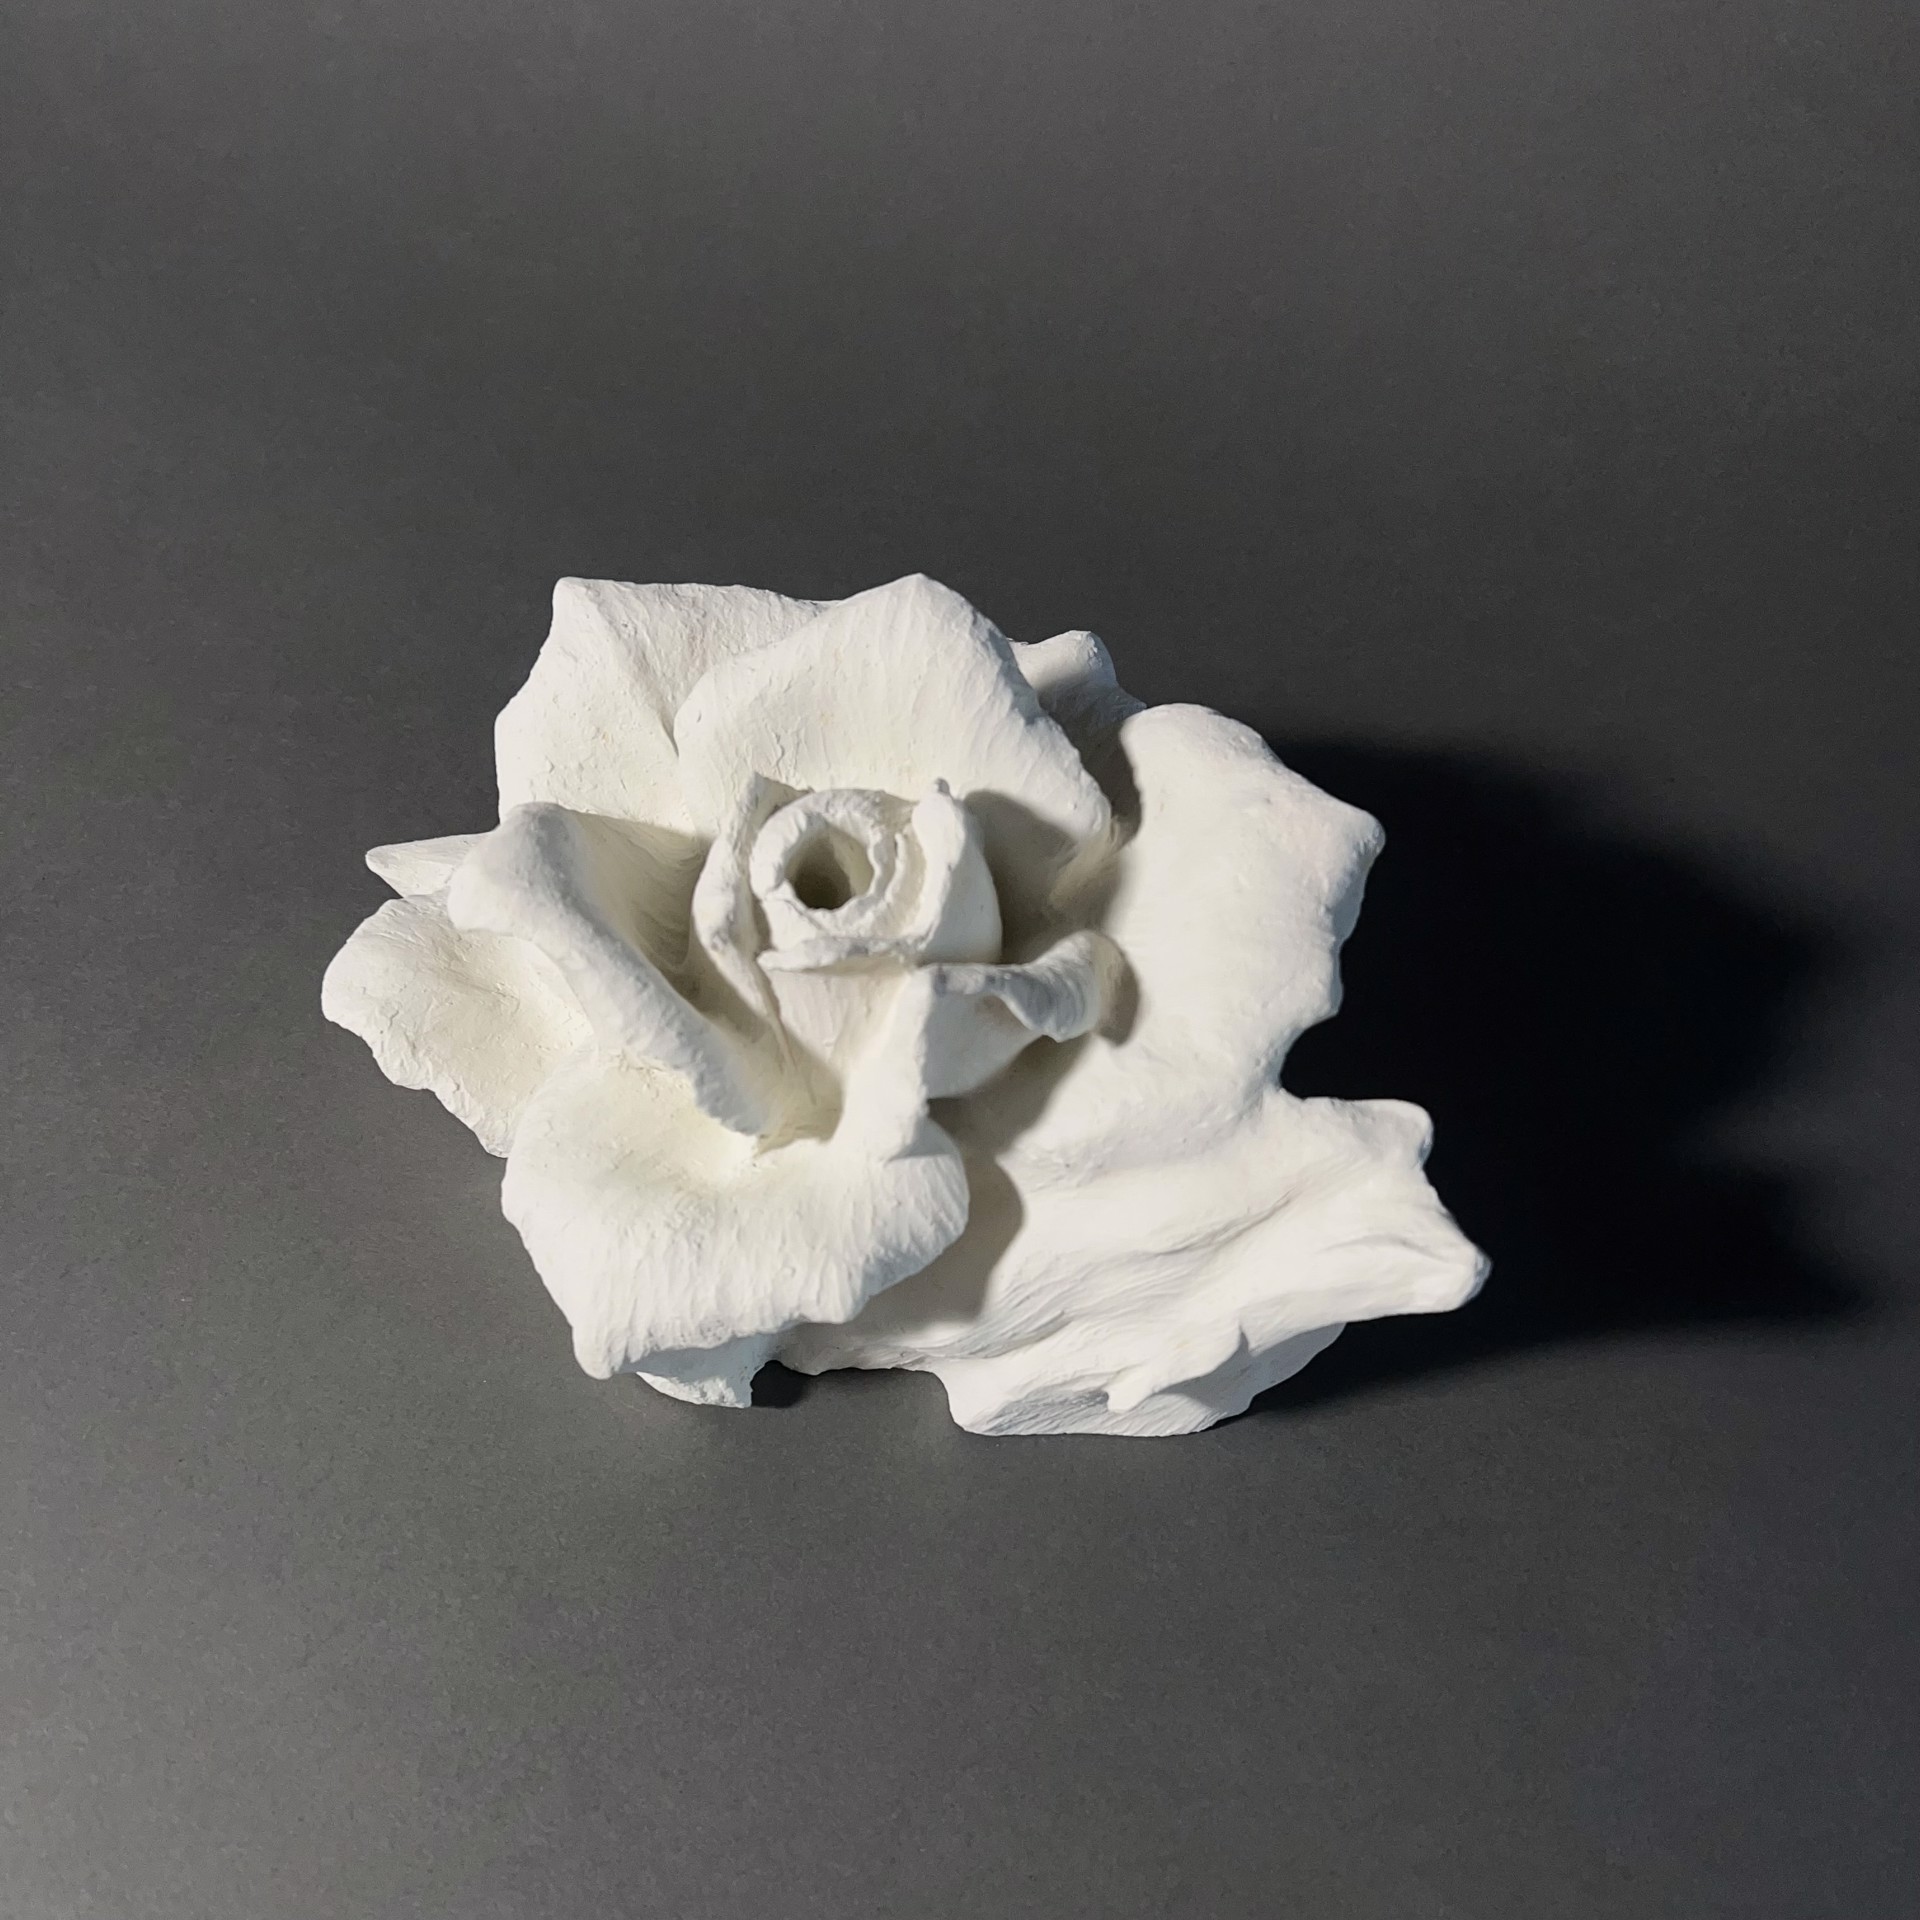 Large White Rose by Amanda Wood